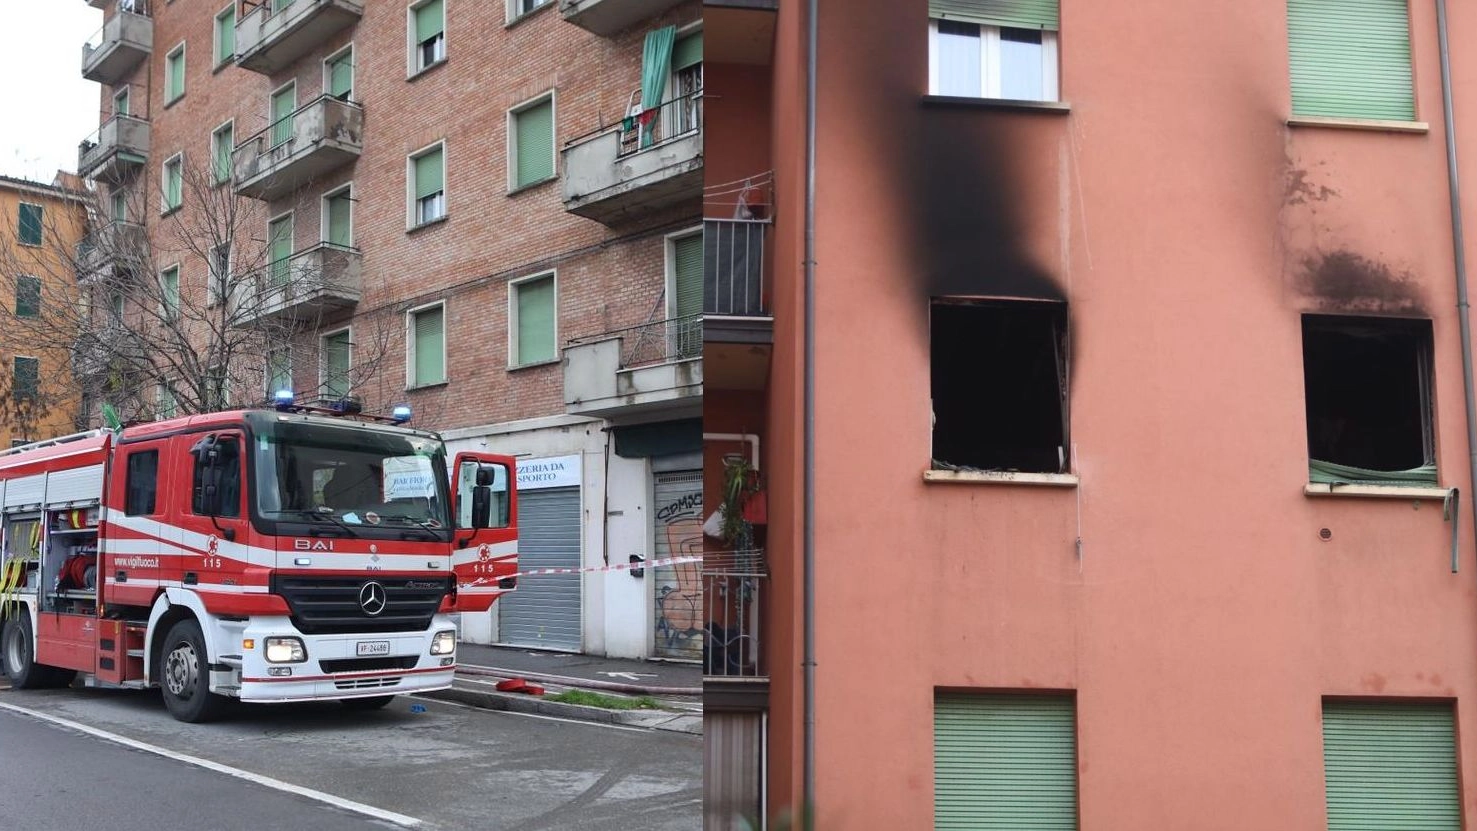 Tragico incendio in via Fioravanti: un morto e una persona grave (FotoSchicchi)